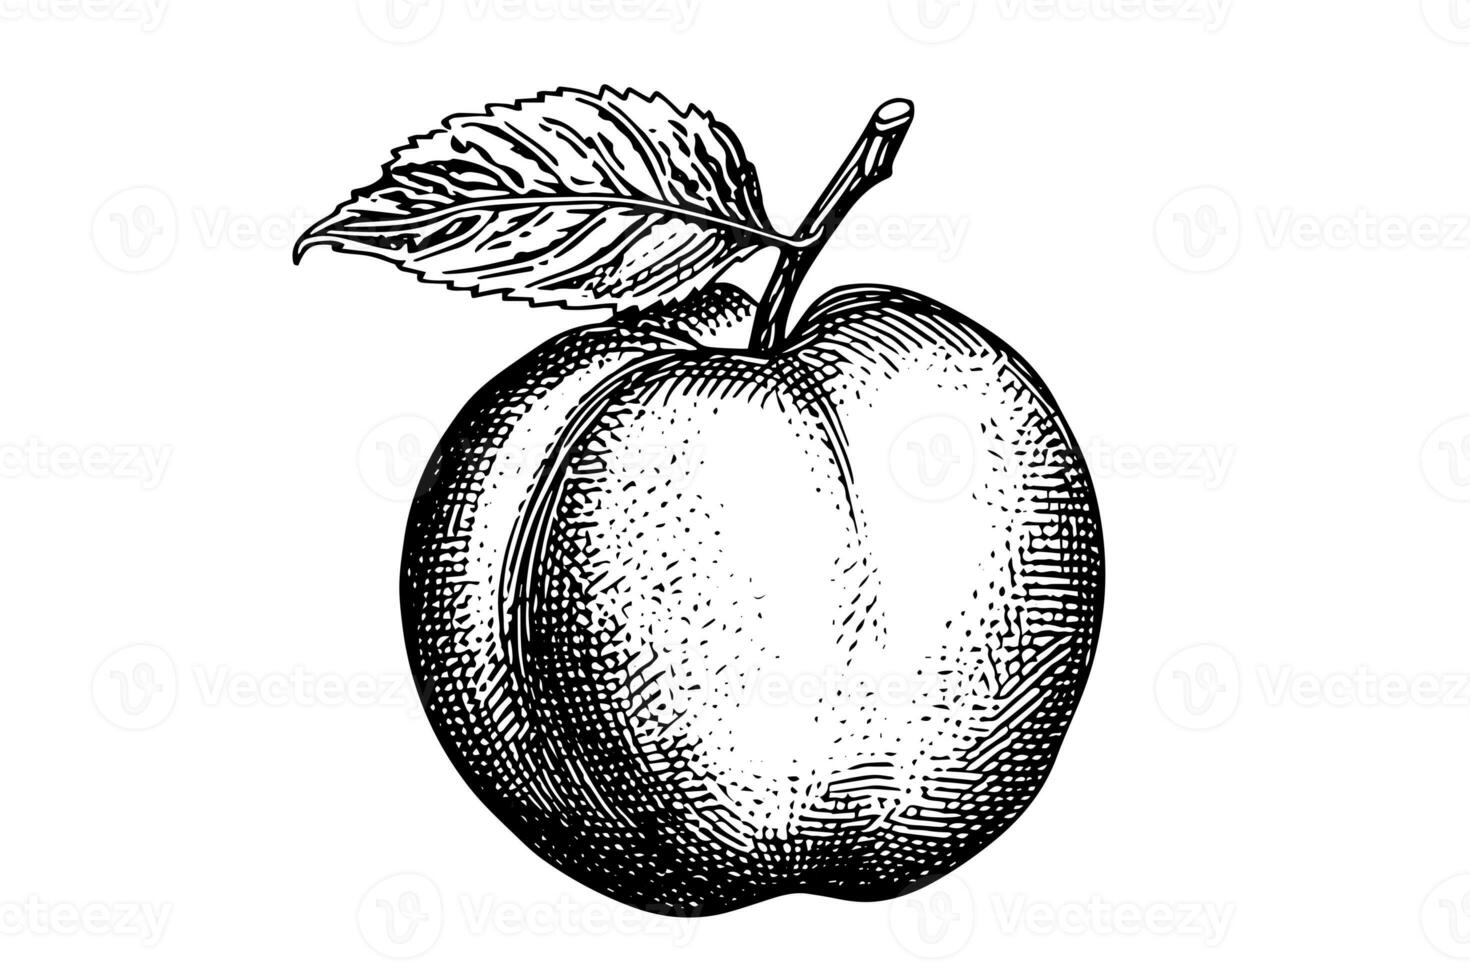 Pfirsich oder Aprikose Obst Hand gezeichnet skizzieren im graviert Stil. foto